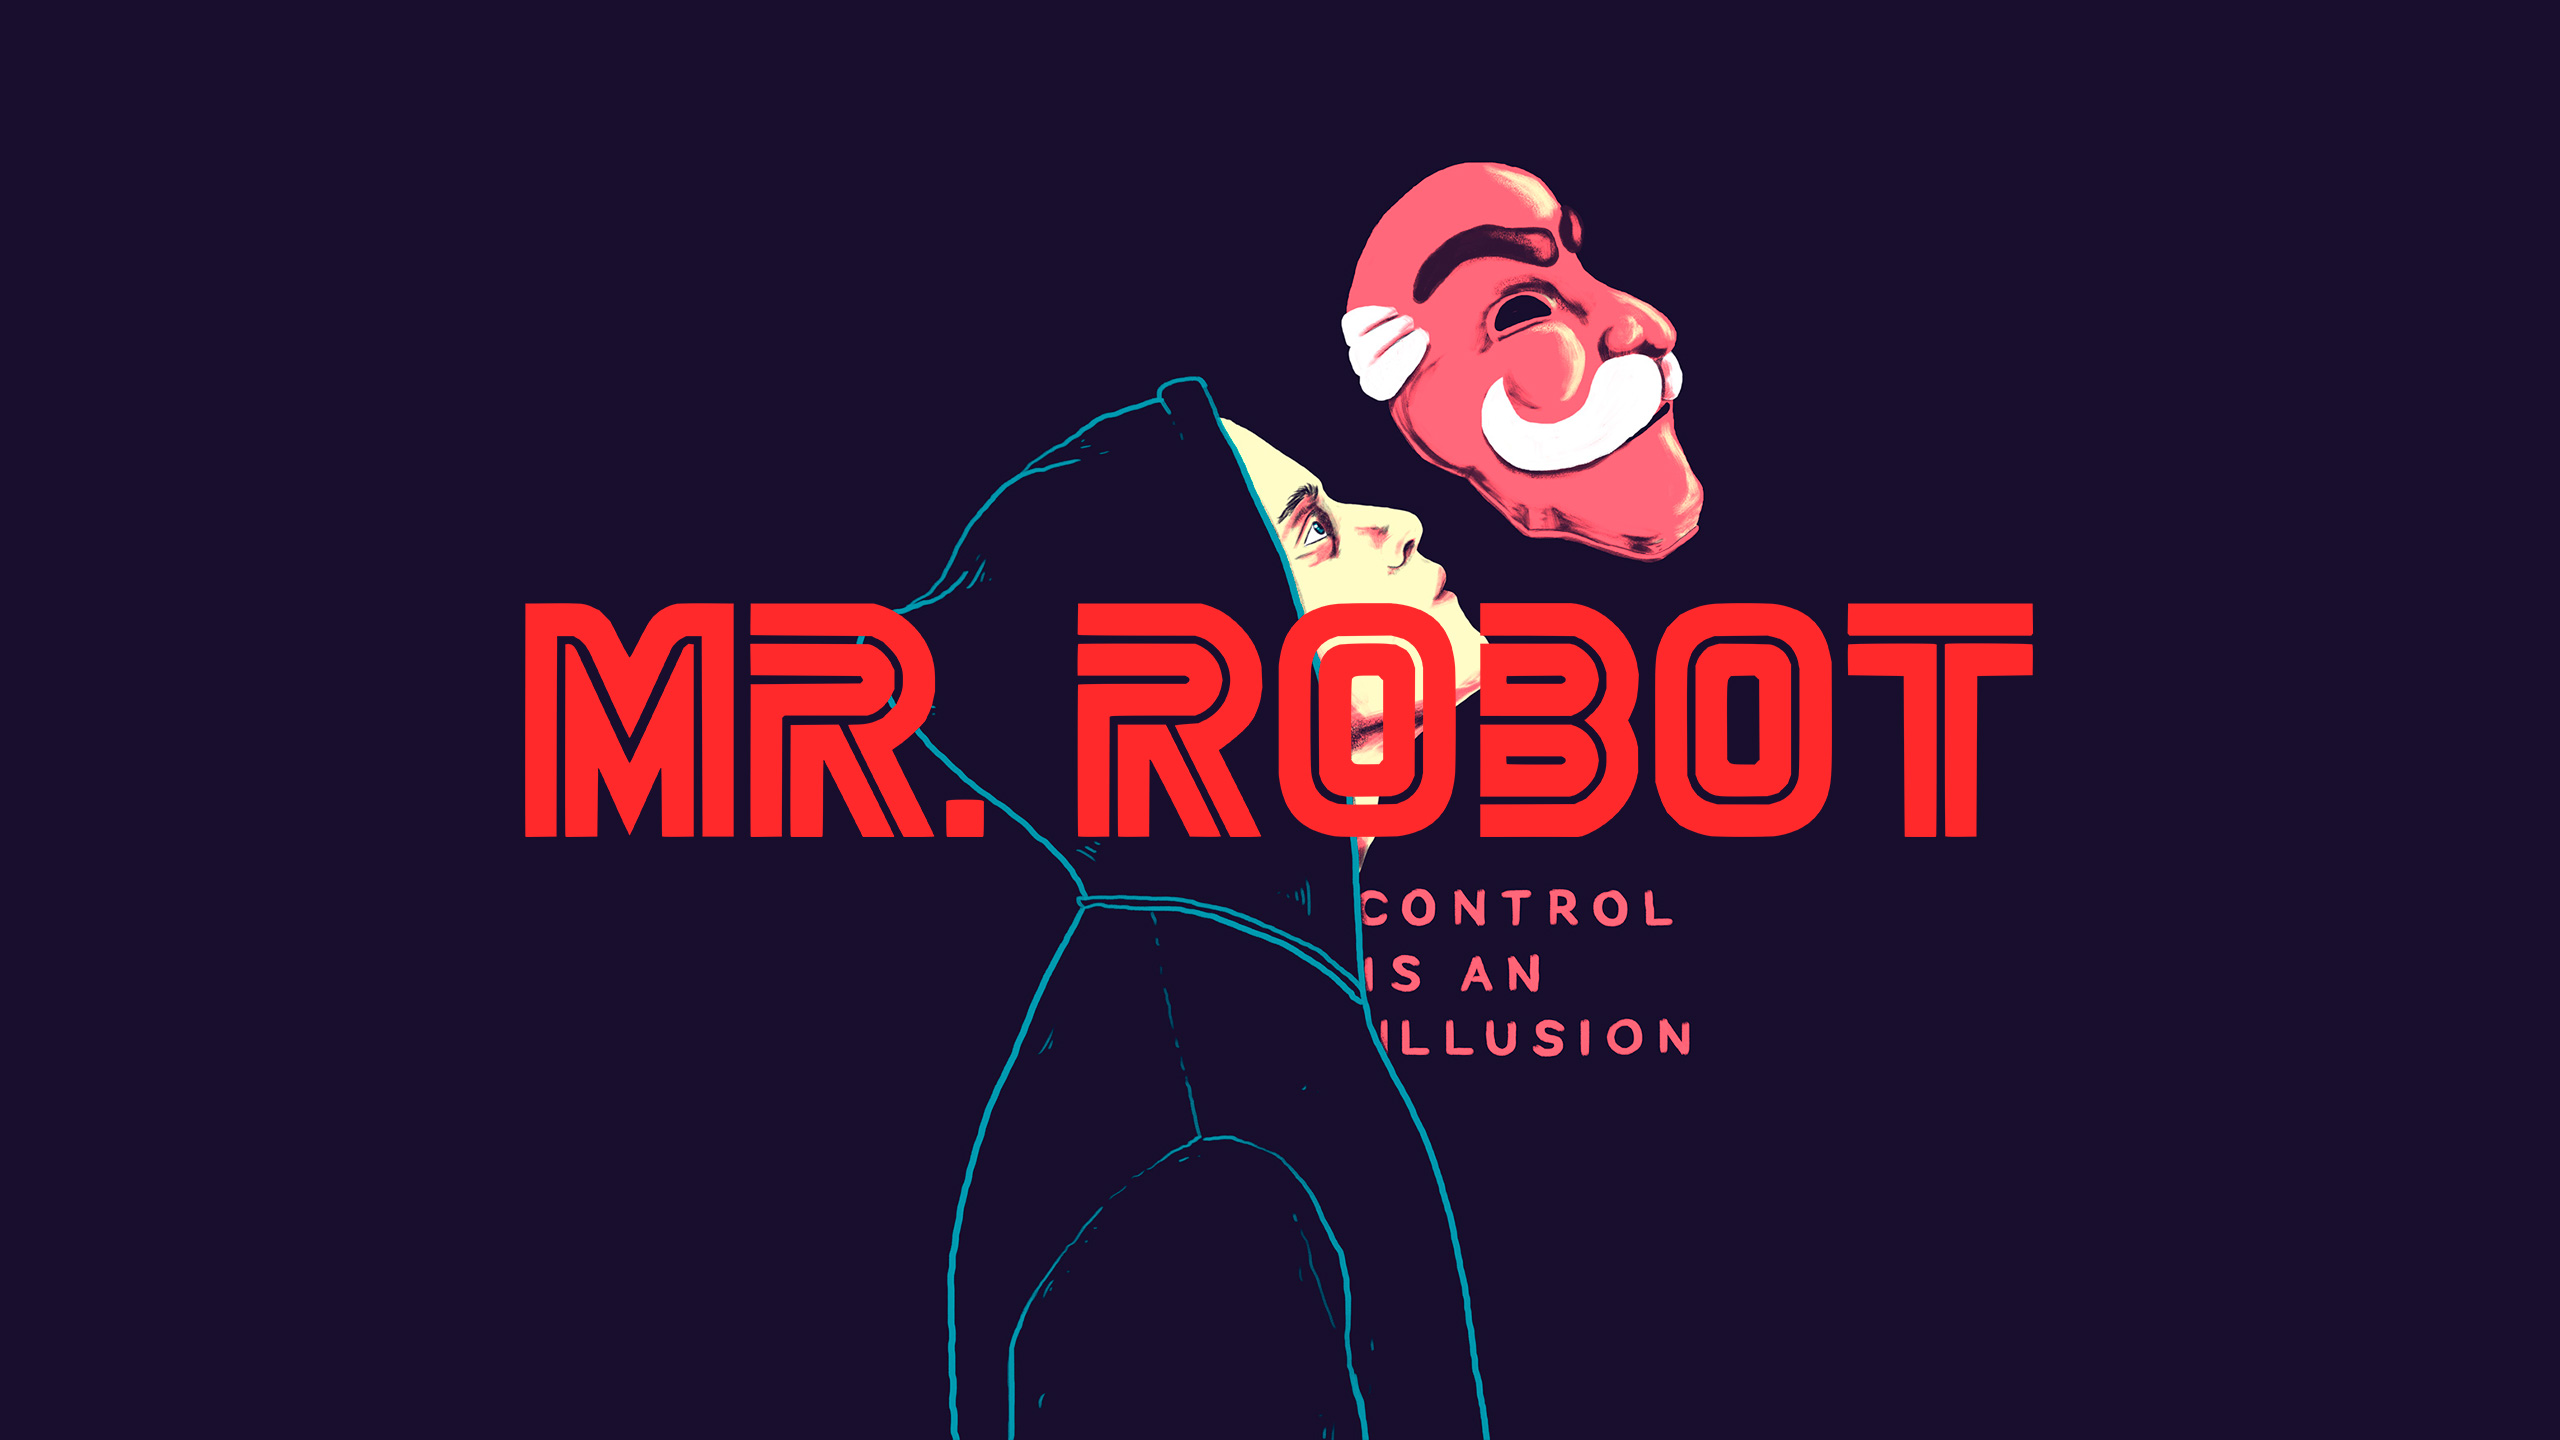 Original Resolution Popular - Mr Robot Wallpaper 4k , HD Wallpaper & Backgrounds